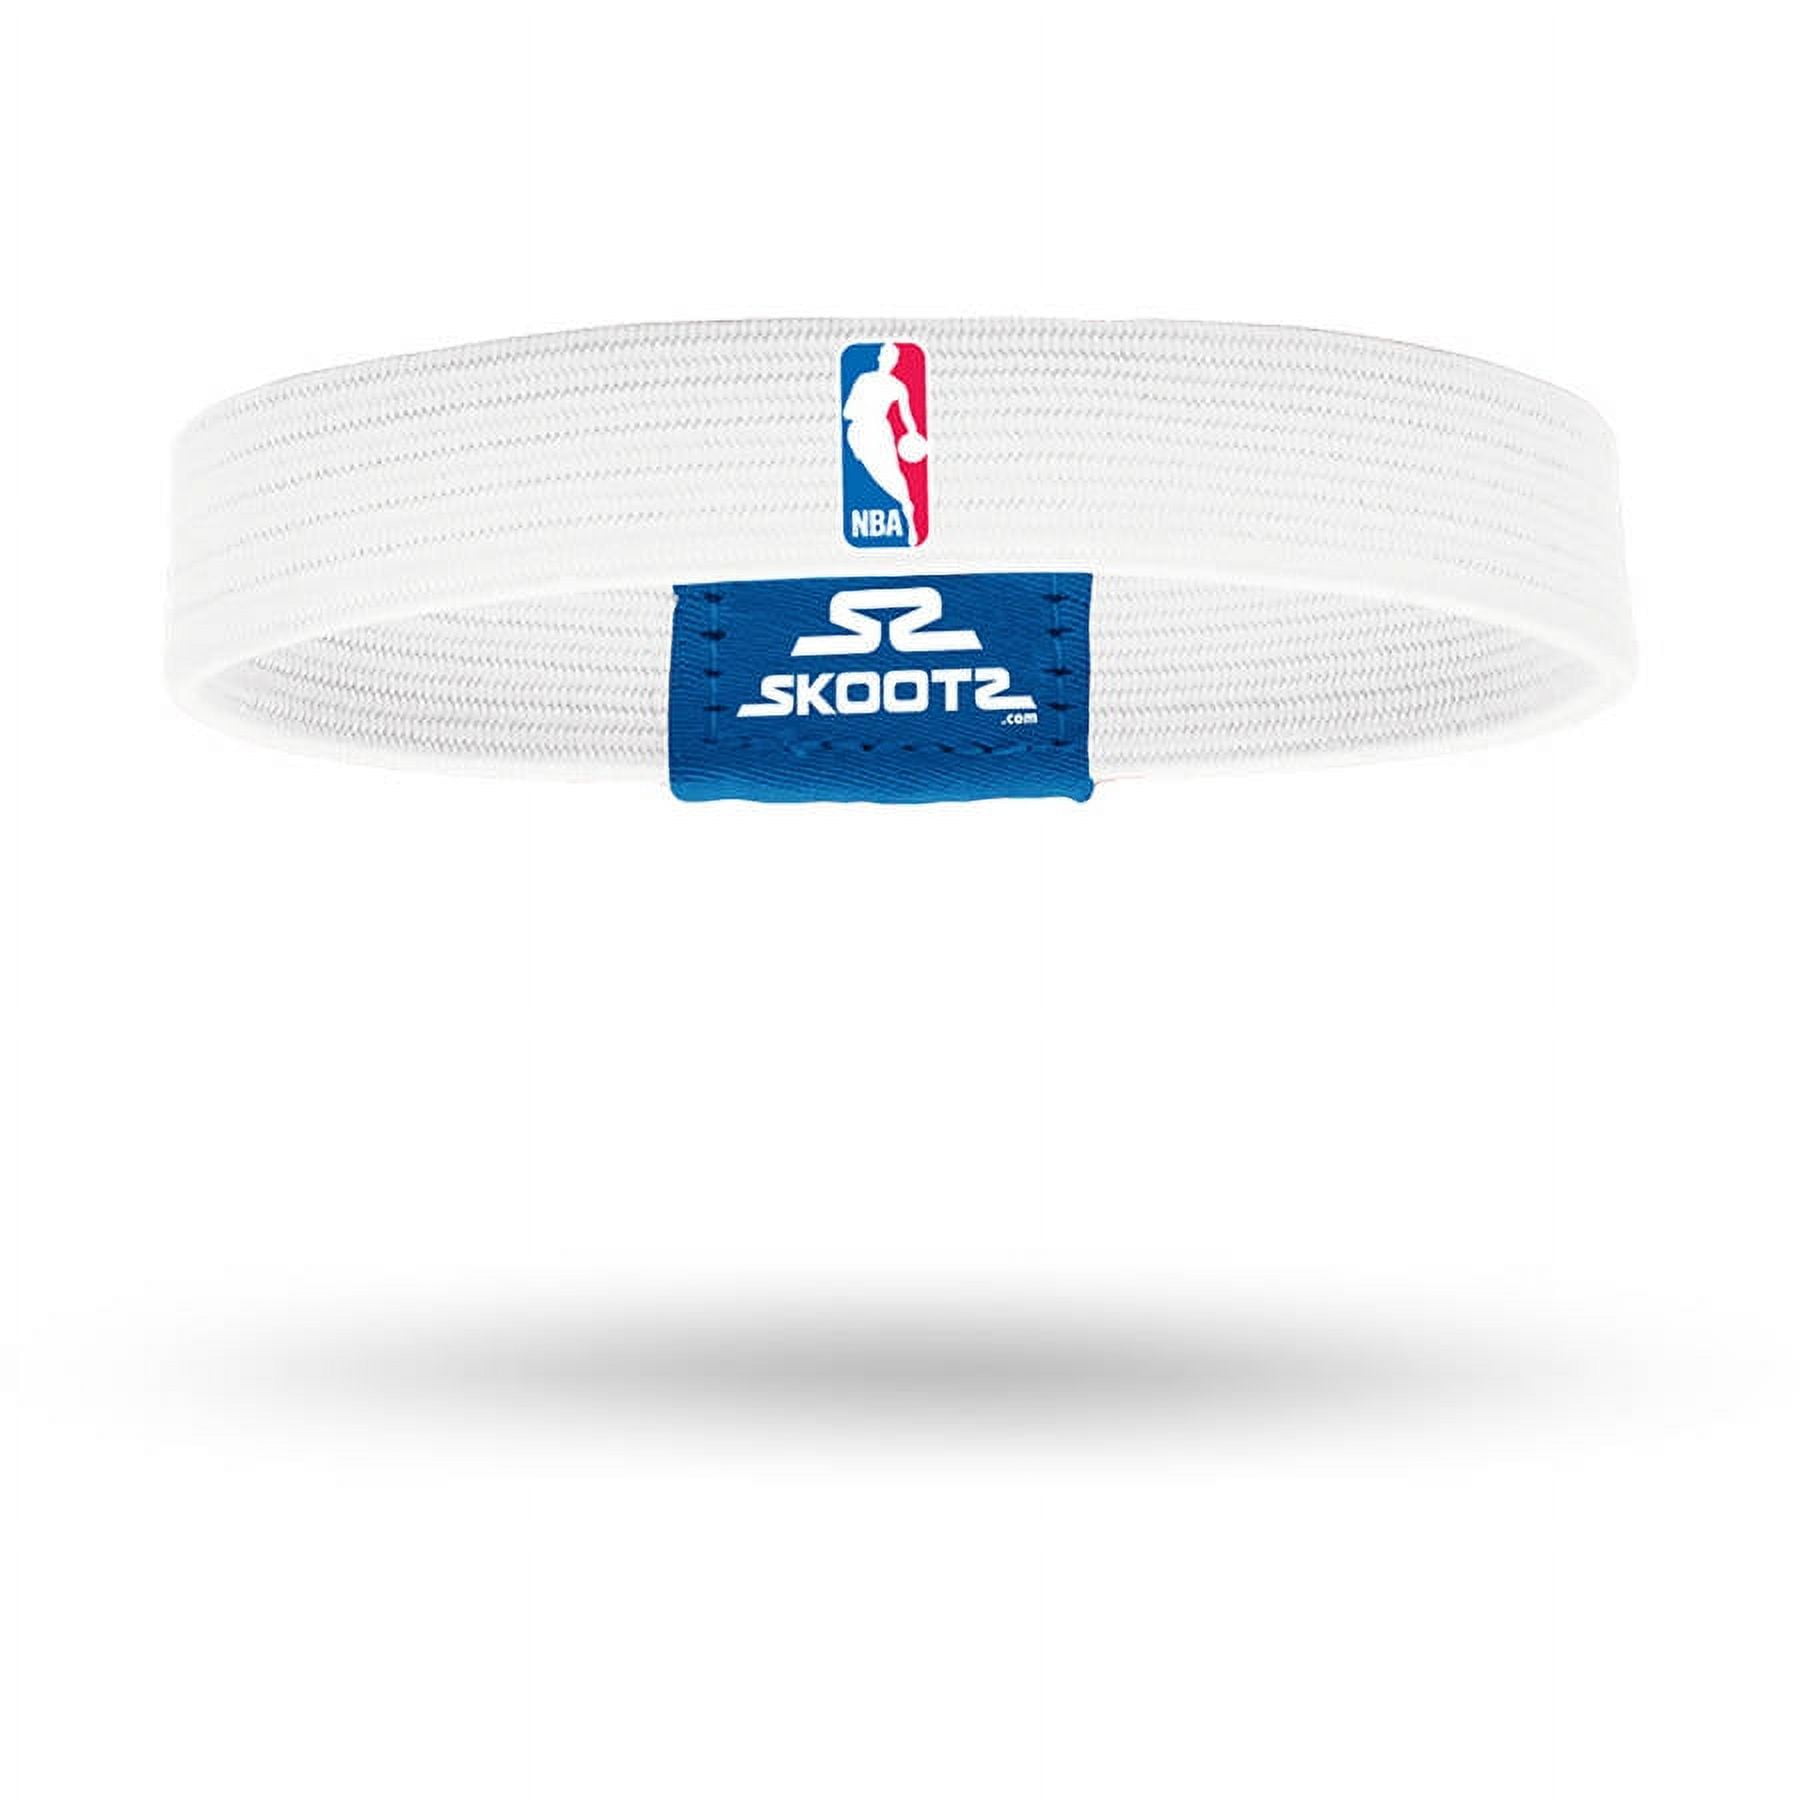 SkootZ Wristband, NBA Logo Man White 